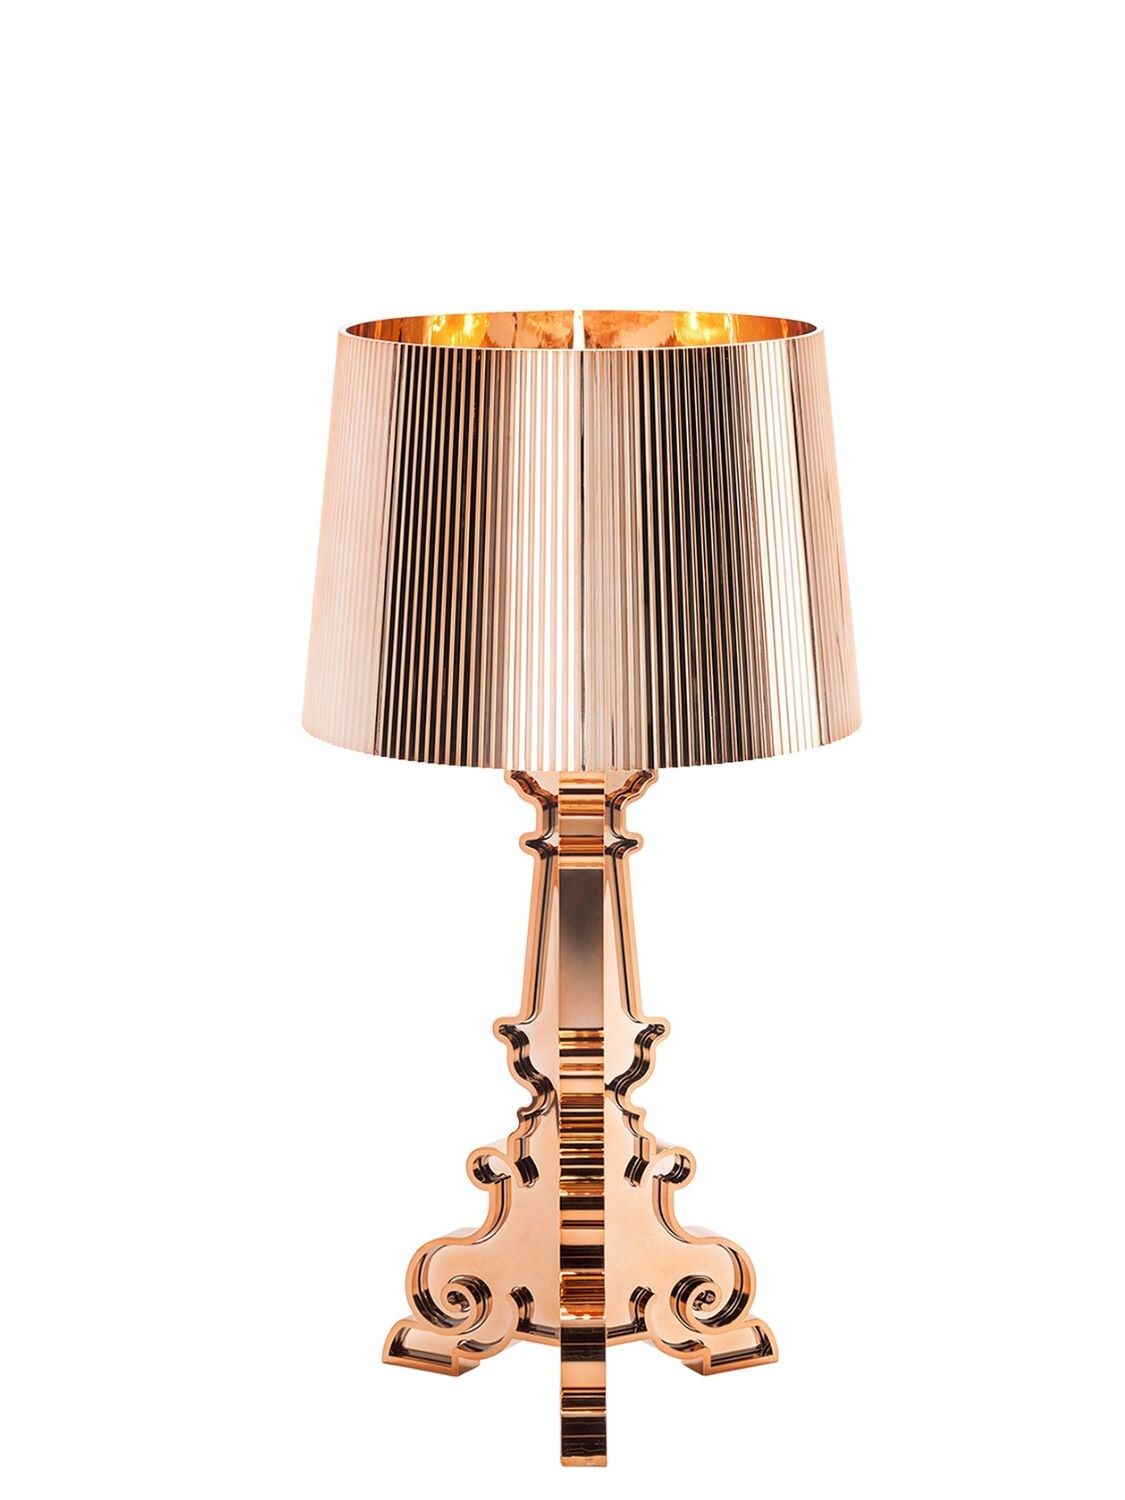 BOURGIE METALLIC TABLE LAMP | Luisaviaroma